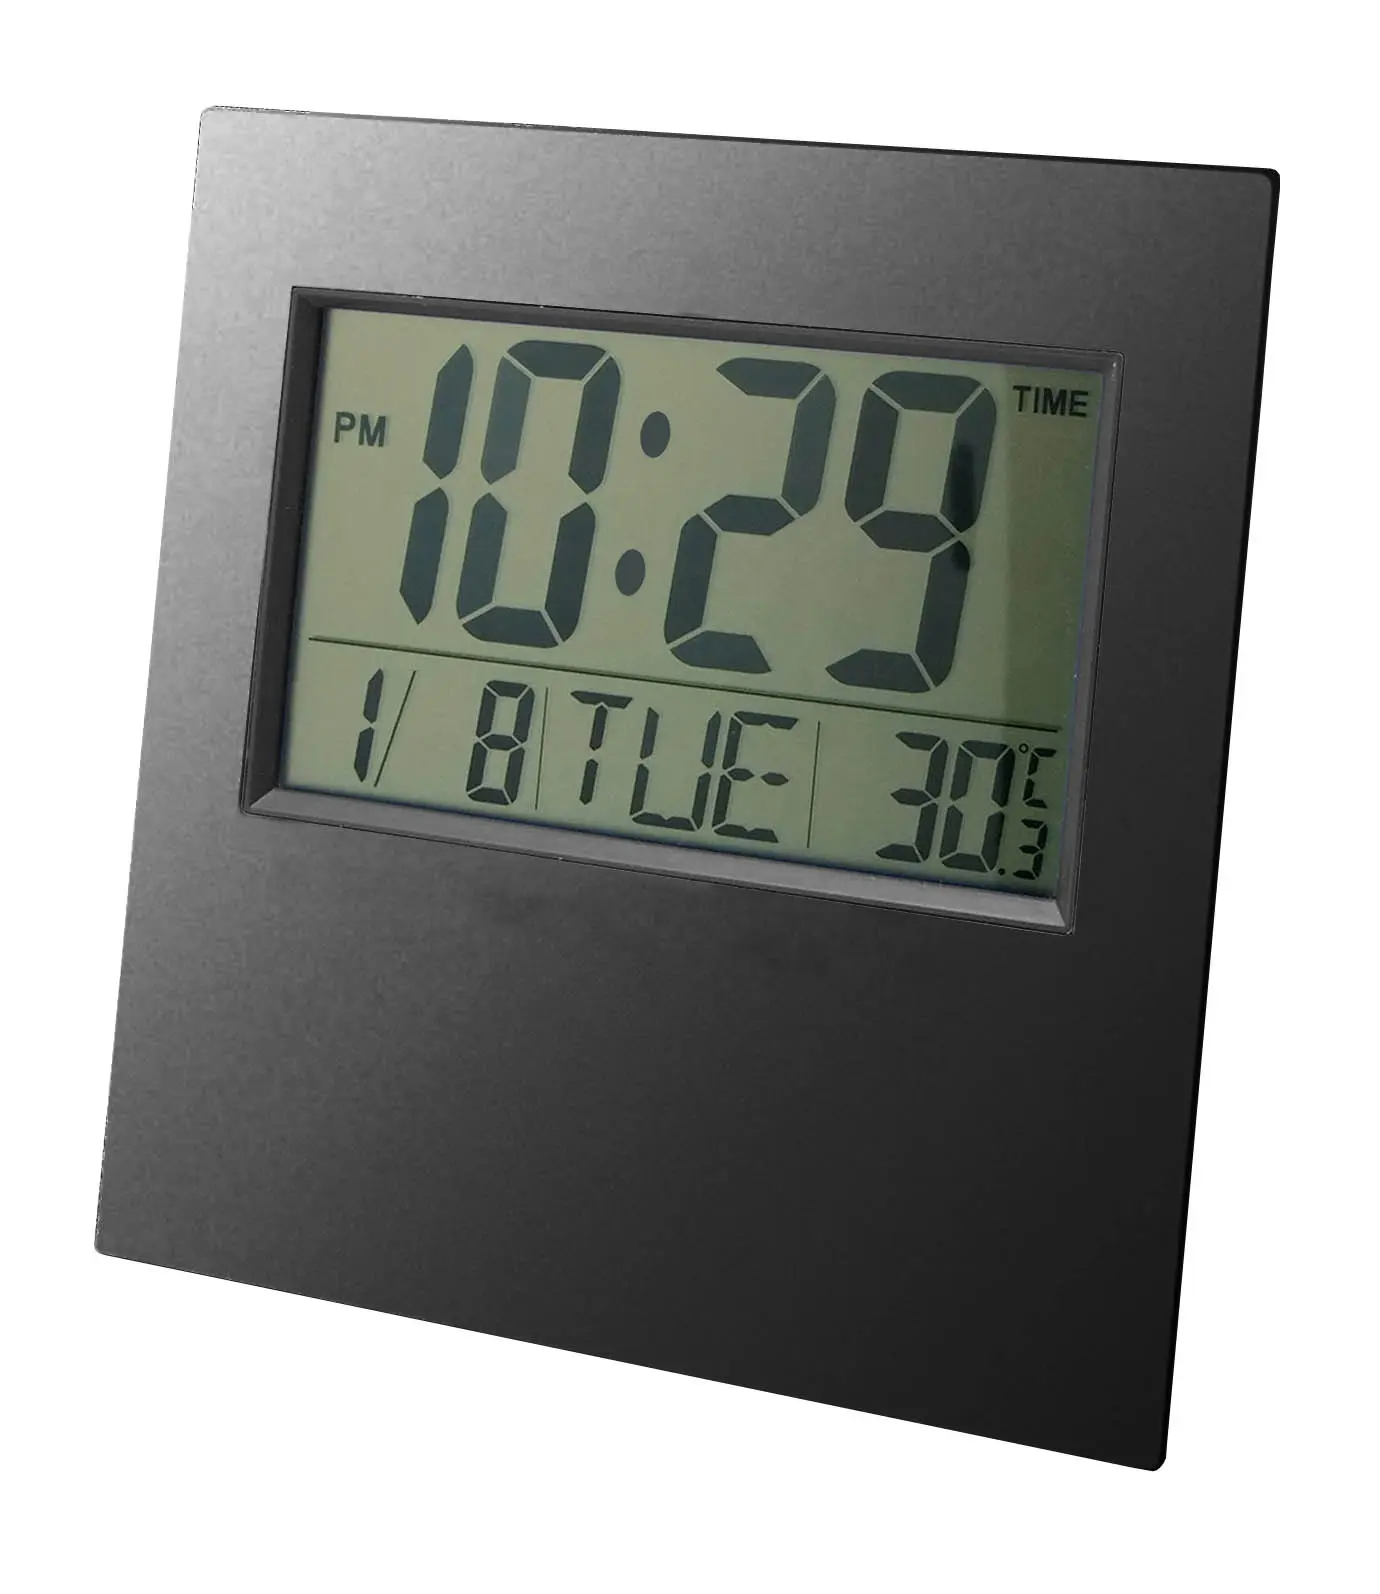 Murah Layar LCD Besar Dinding dan Meja Digital Kalender Jam Alarm Jam Hadiah LCD Display Kalender dengan Tanggal/Bulan/Minggu/Alarm